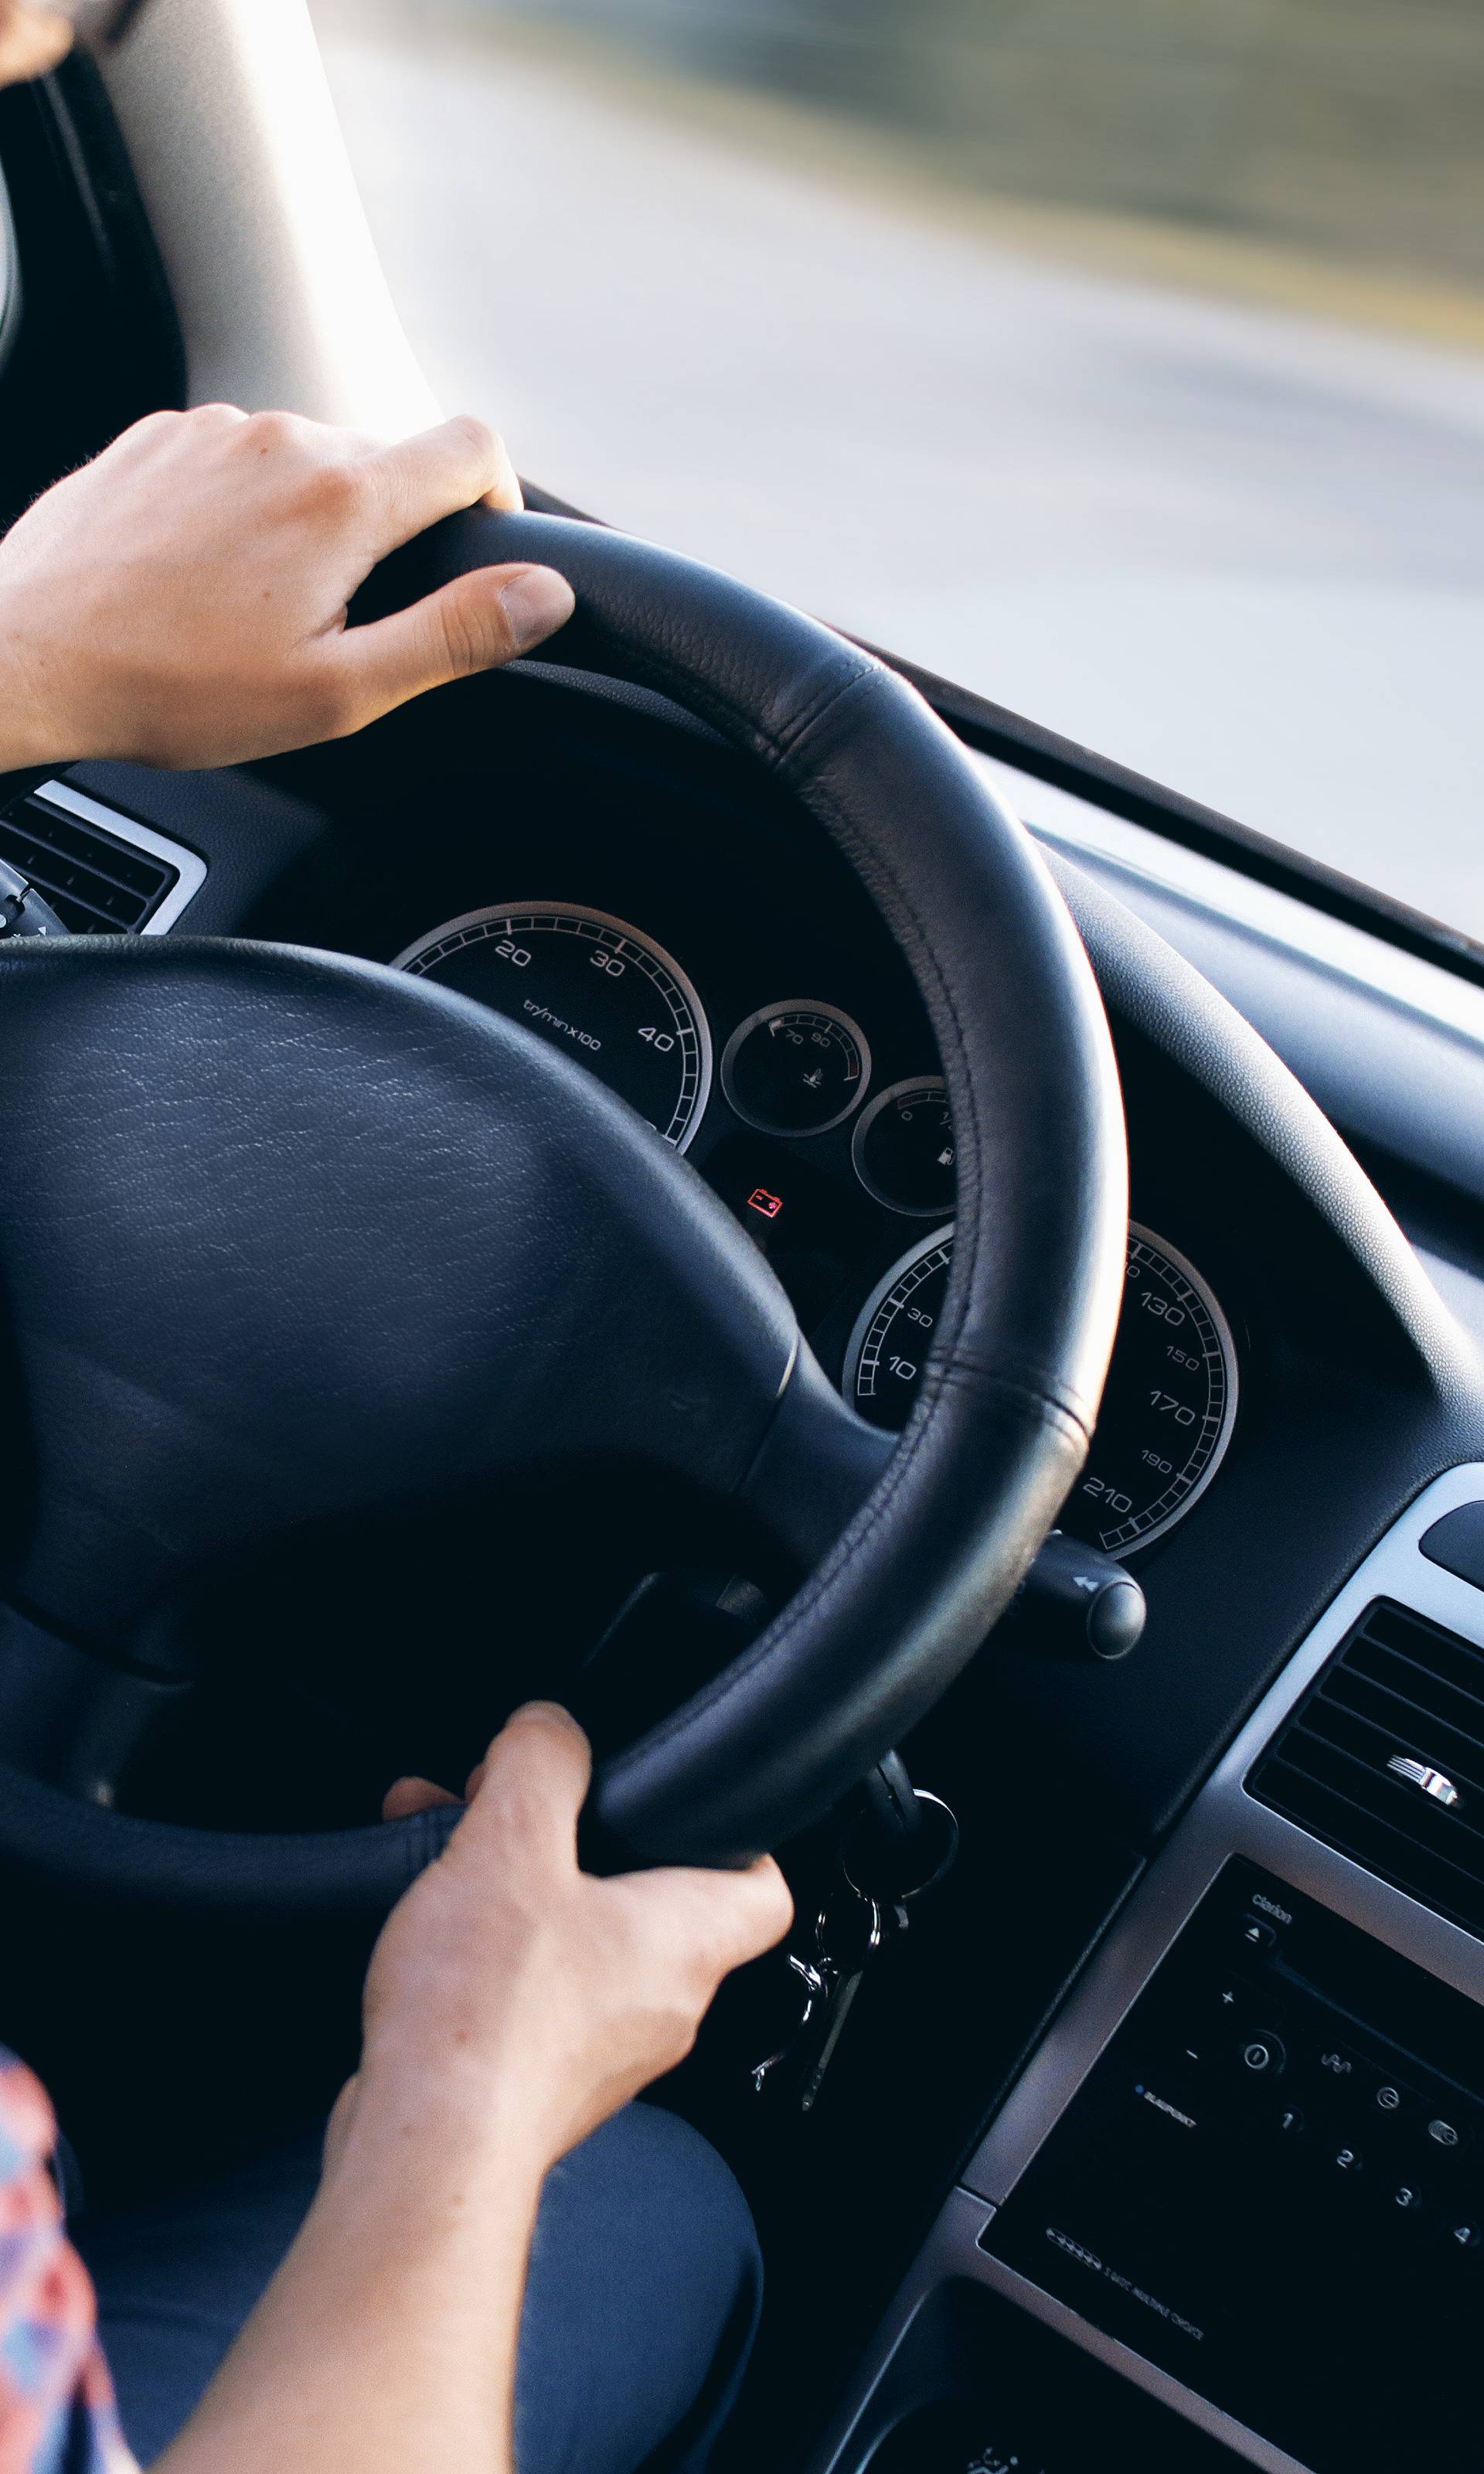 Nije samo do vas: Vibracije u autu krive za pospanost vozača